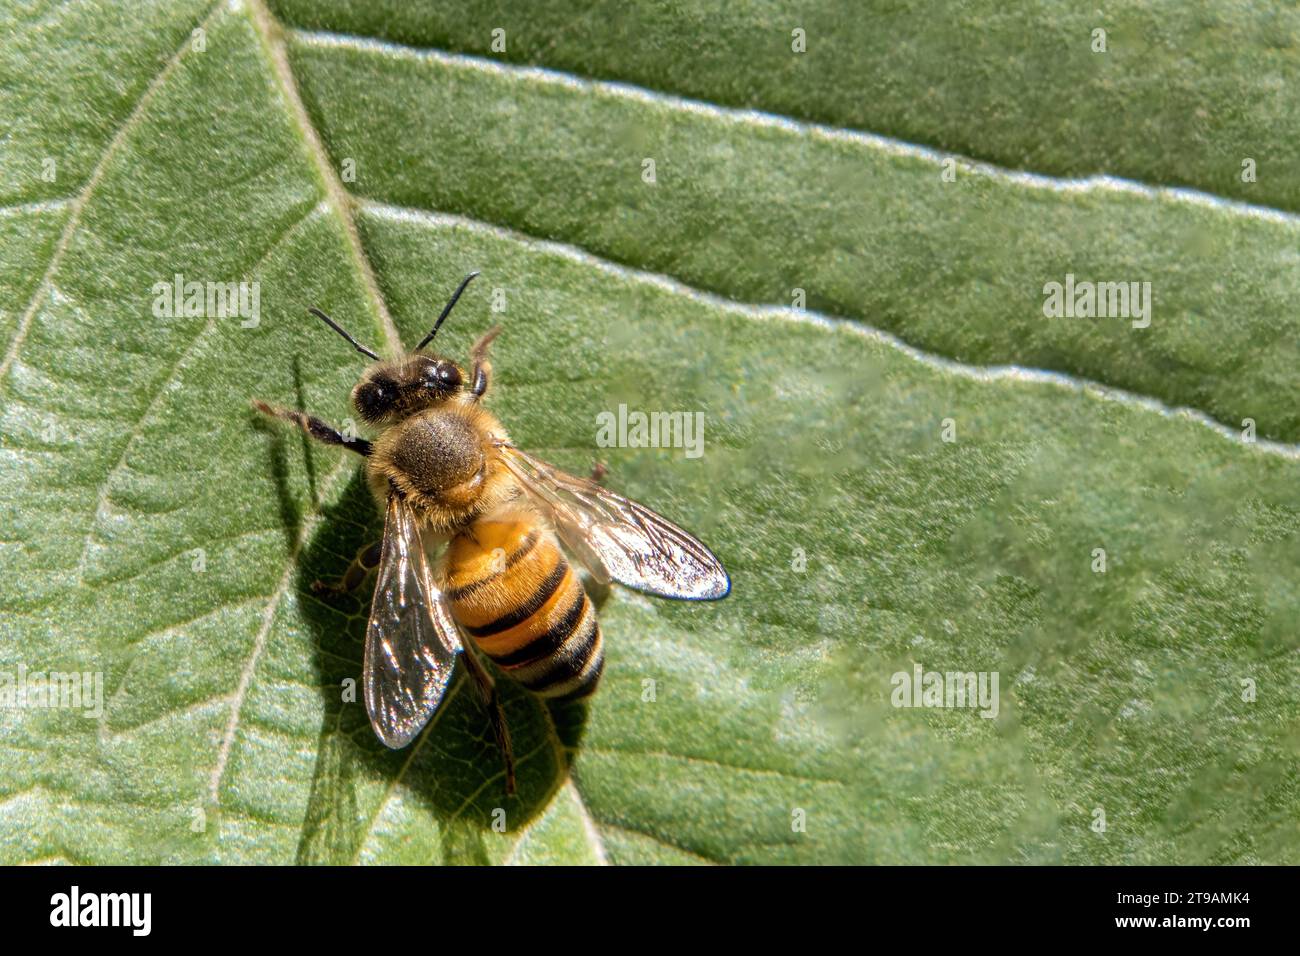 Eine Makroansicht eines Bestäubers - komplizierte Details eines Insekts in Nahaufnahme mit Membranflügeln Stockfoto